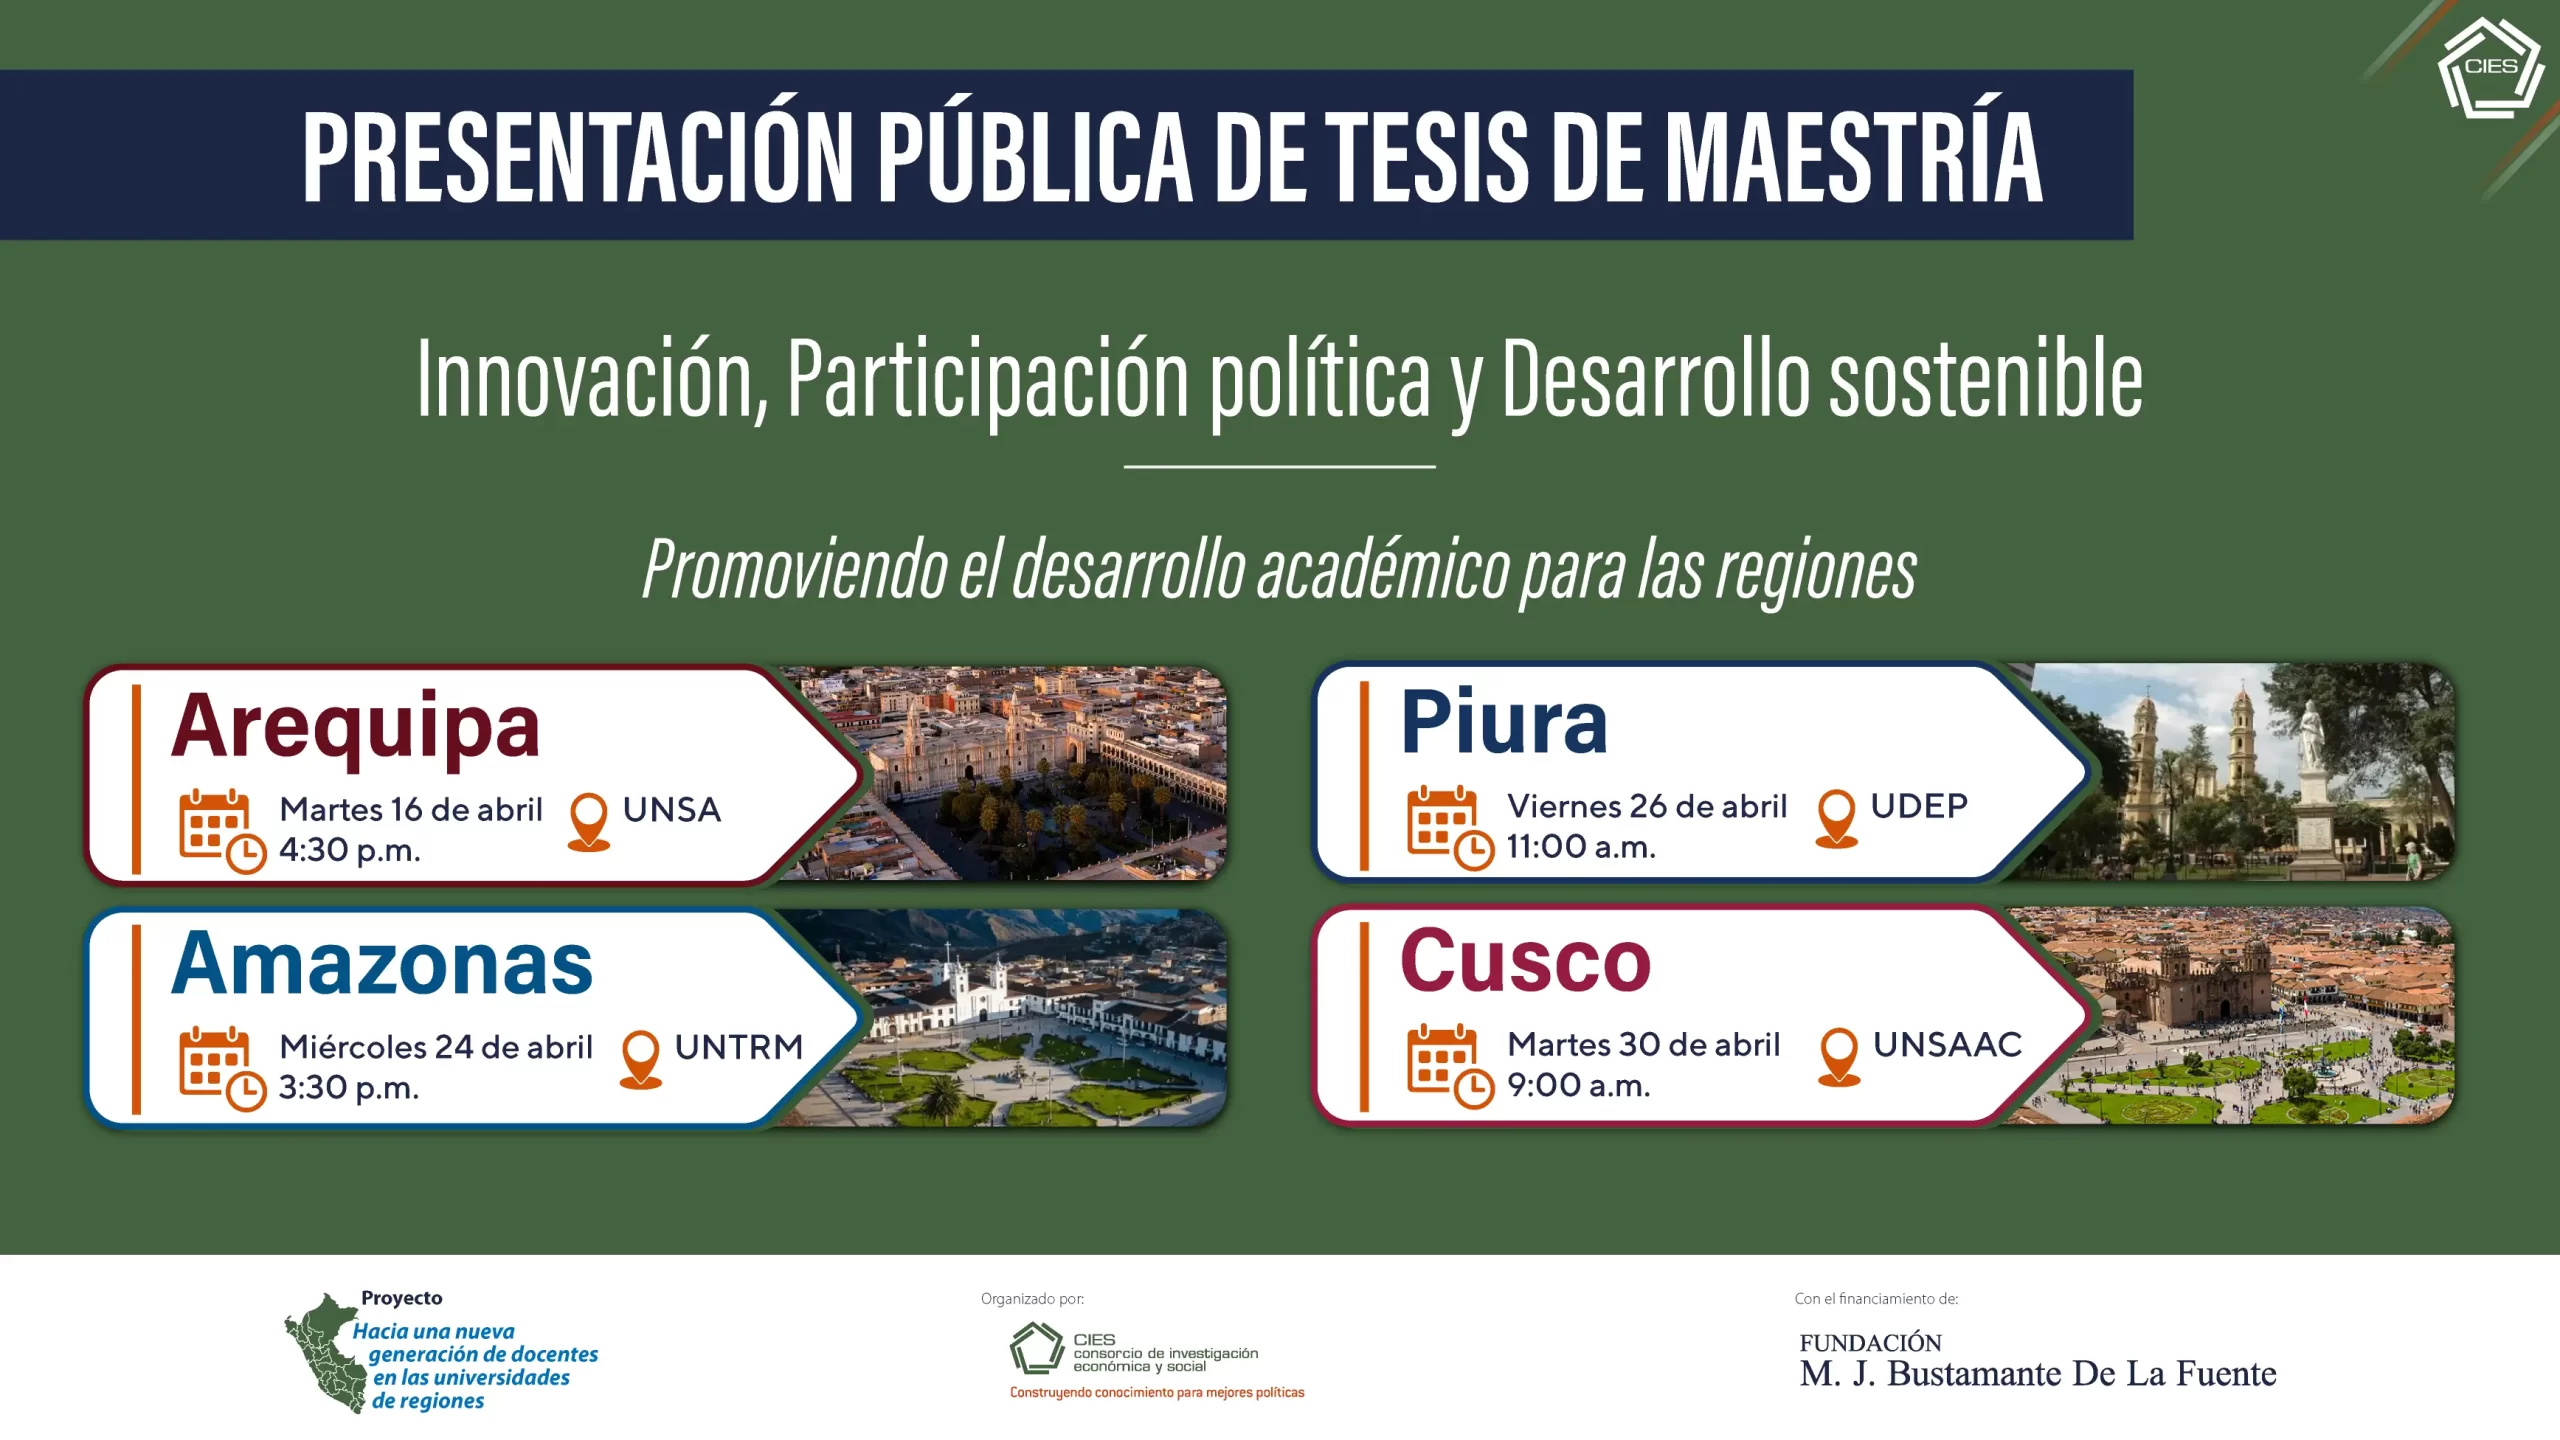 10 tesis de maestría promovidas por el CIES y la Fundación M. J. Bustamante se presentarán en Arequipa, Piura, Amazonas y Cusco